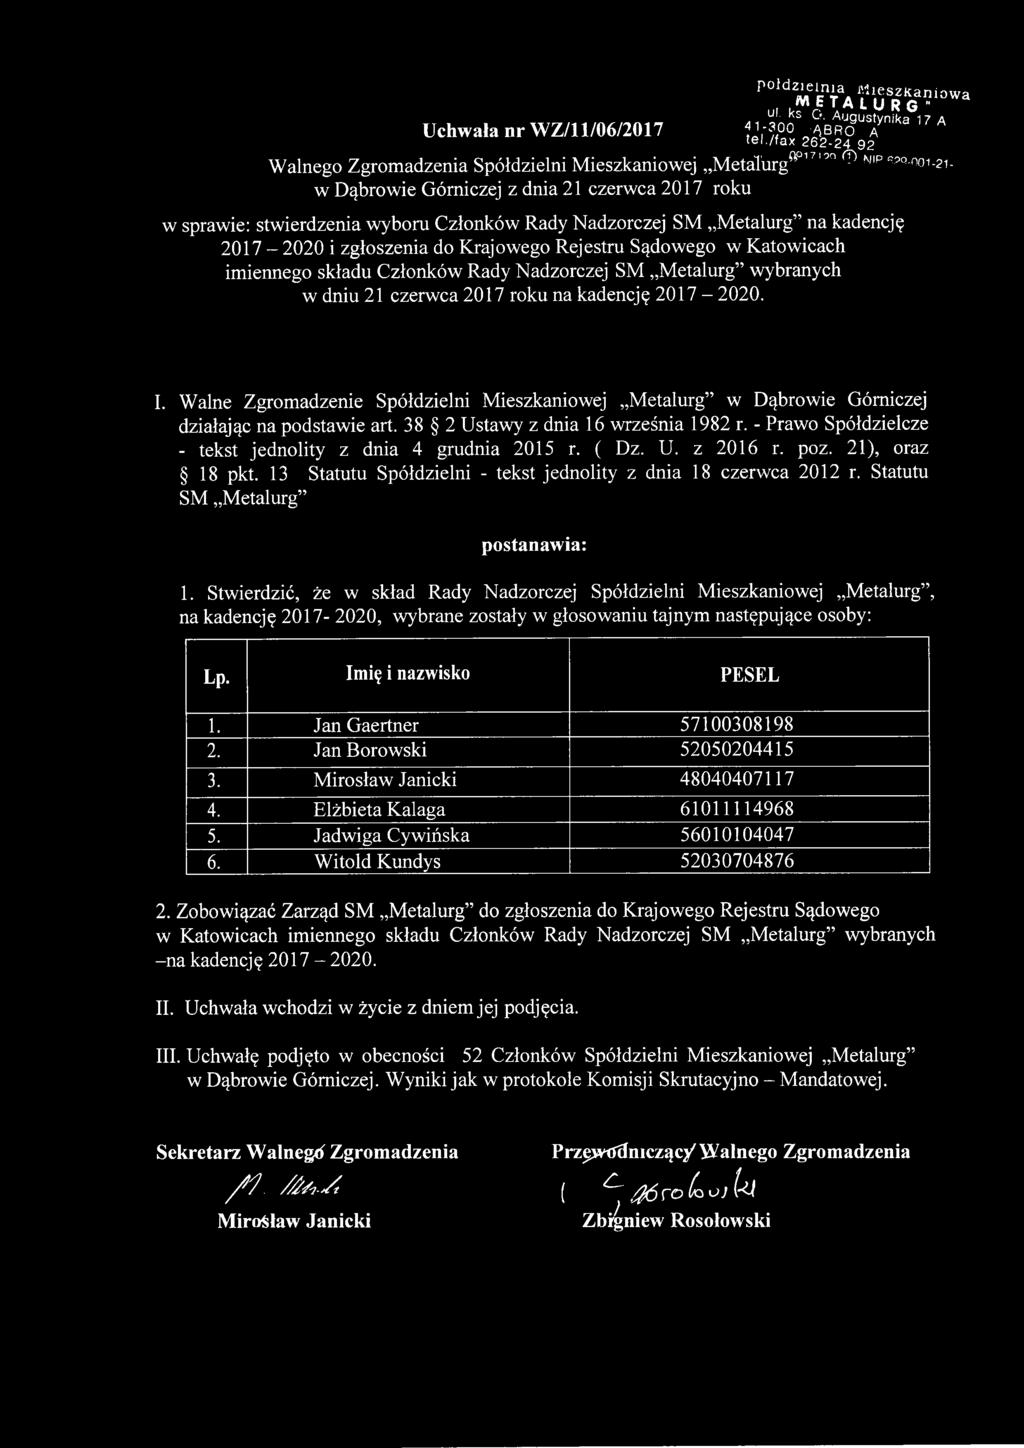 zgłoszenia do Krajowego Rejestru Sądowego w Katowicach imiennego składu Członków Rady Nadzorczej SM Metalurg wybranych w dniu 21 czerwca 2017 roku na kadencję 2017-2020. I.